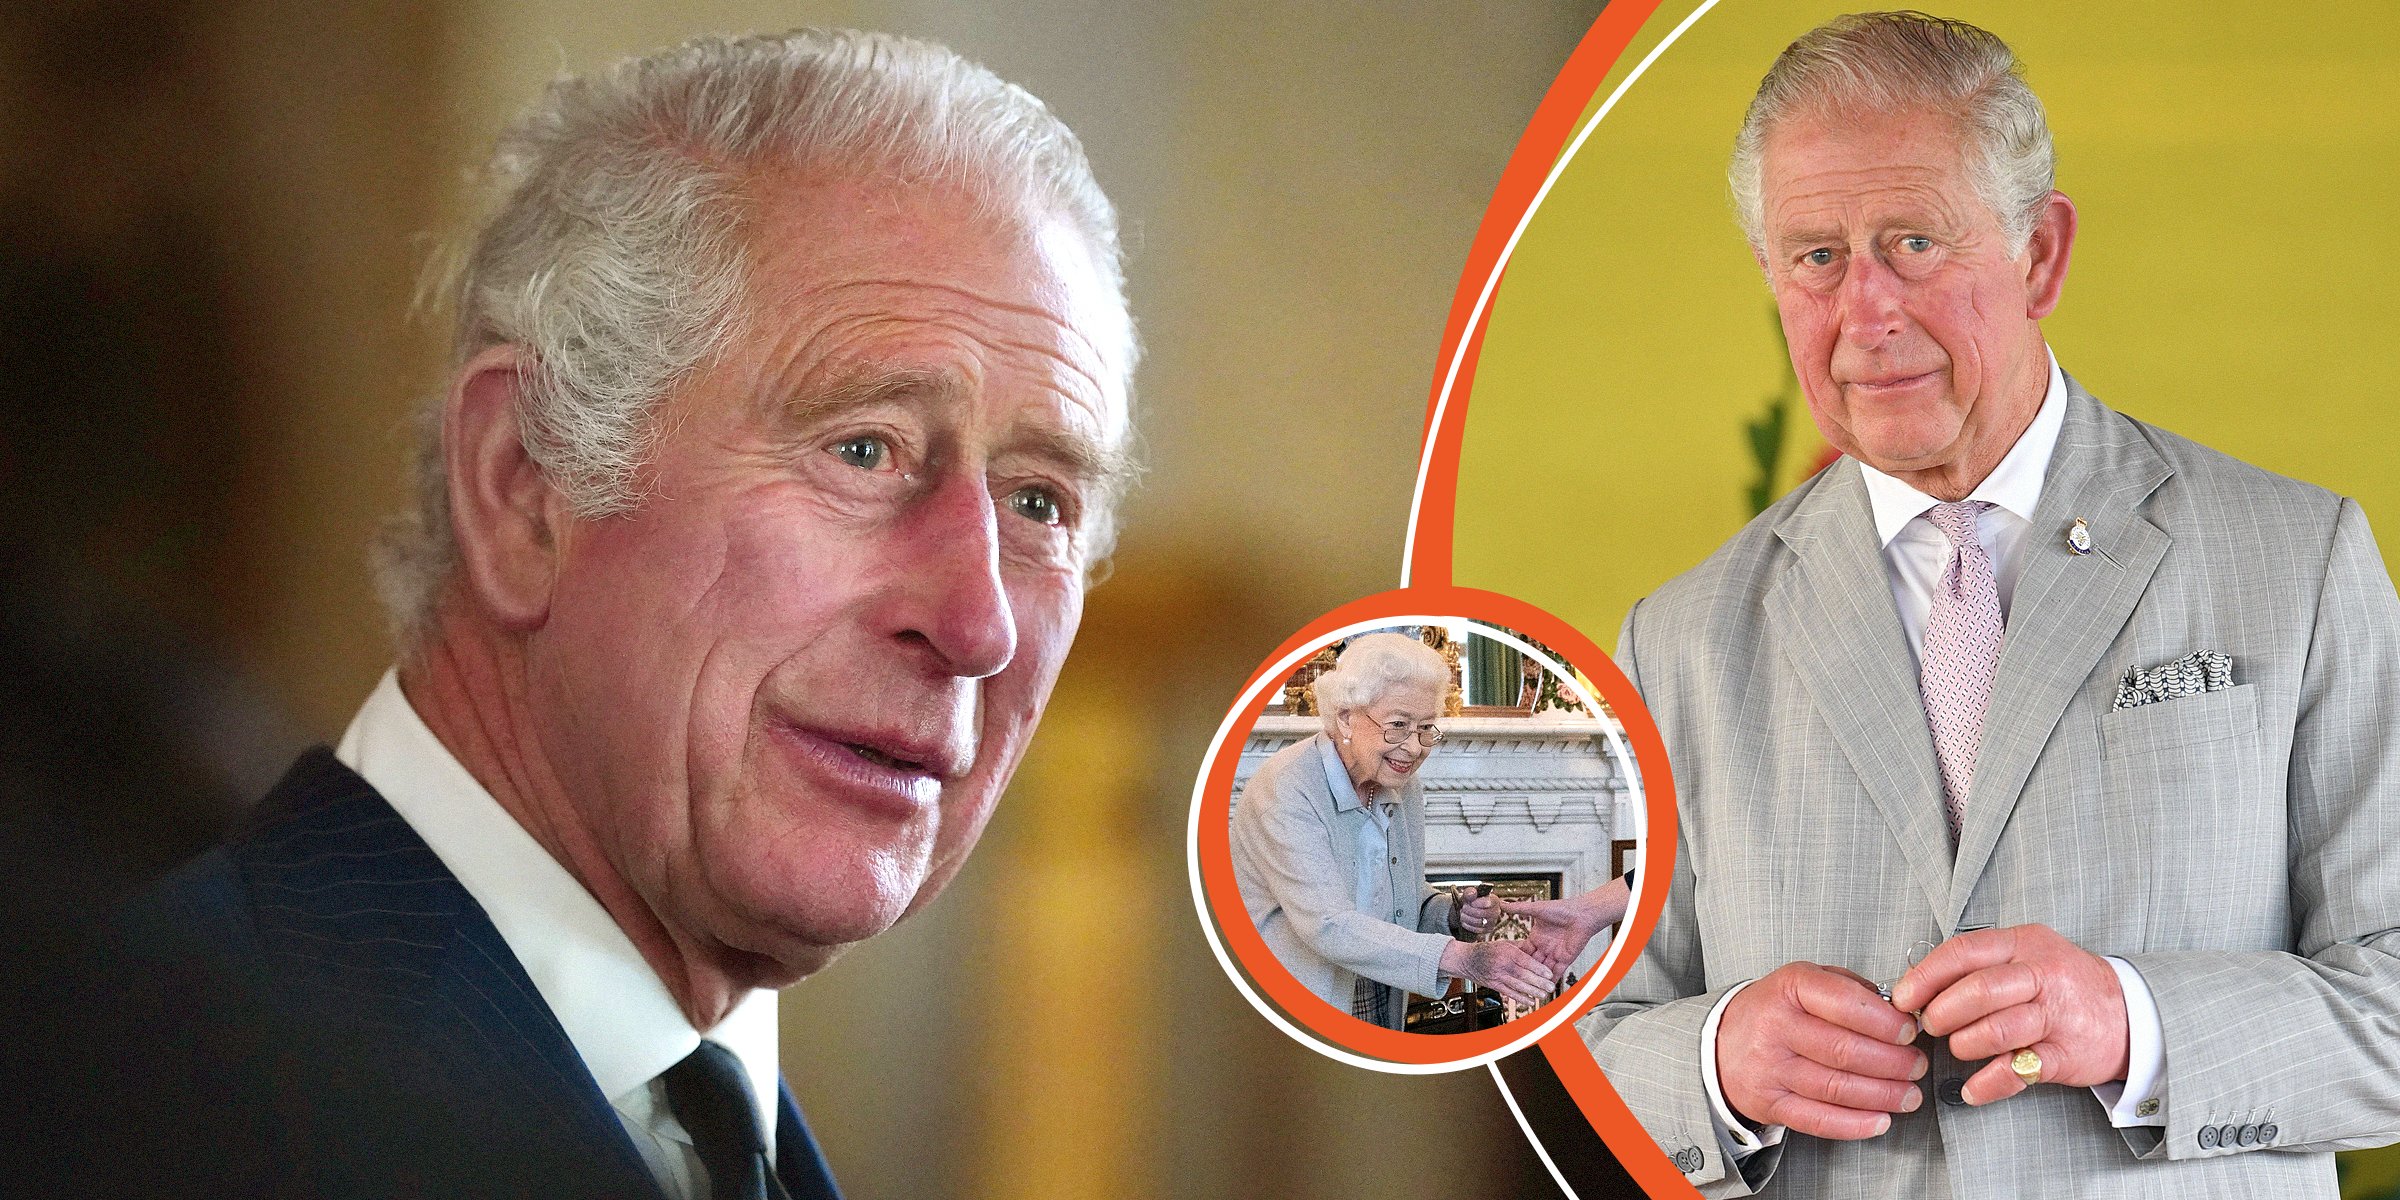 King Charles III | Queen Elizabeth II | Source: Getty Images